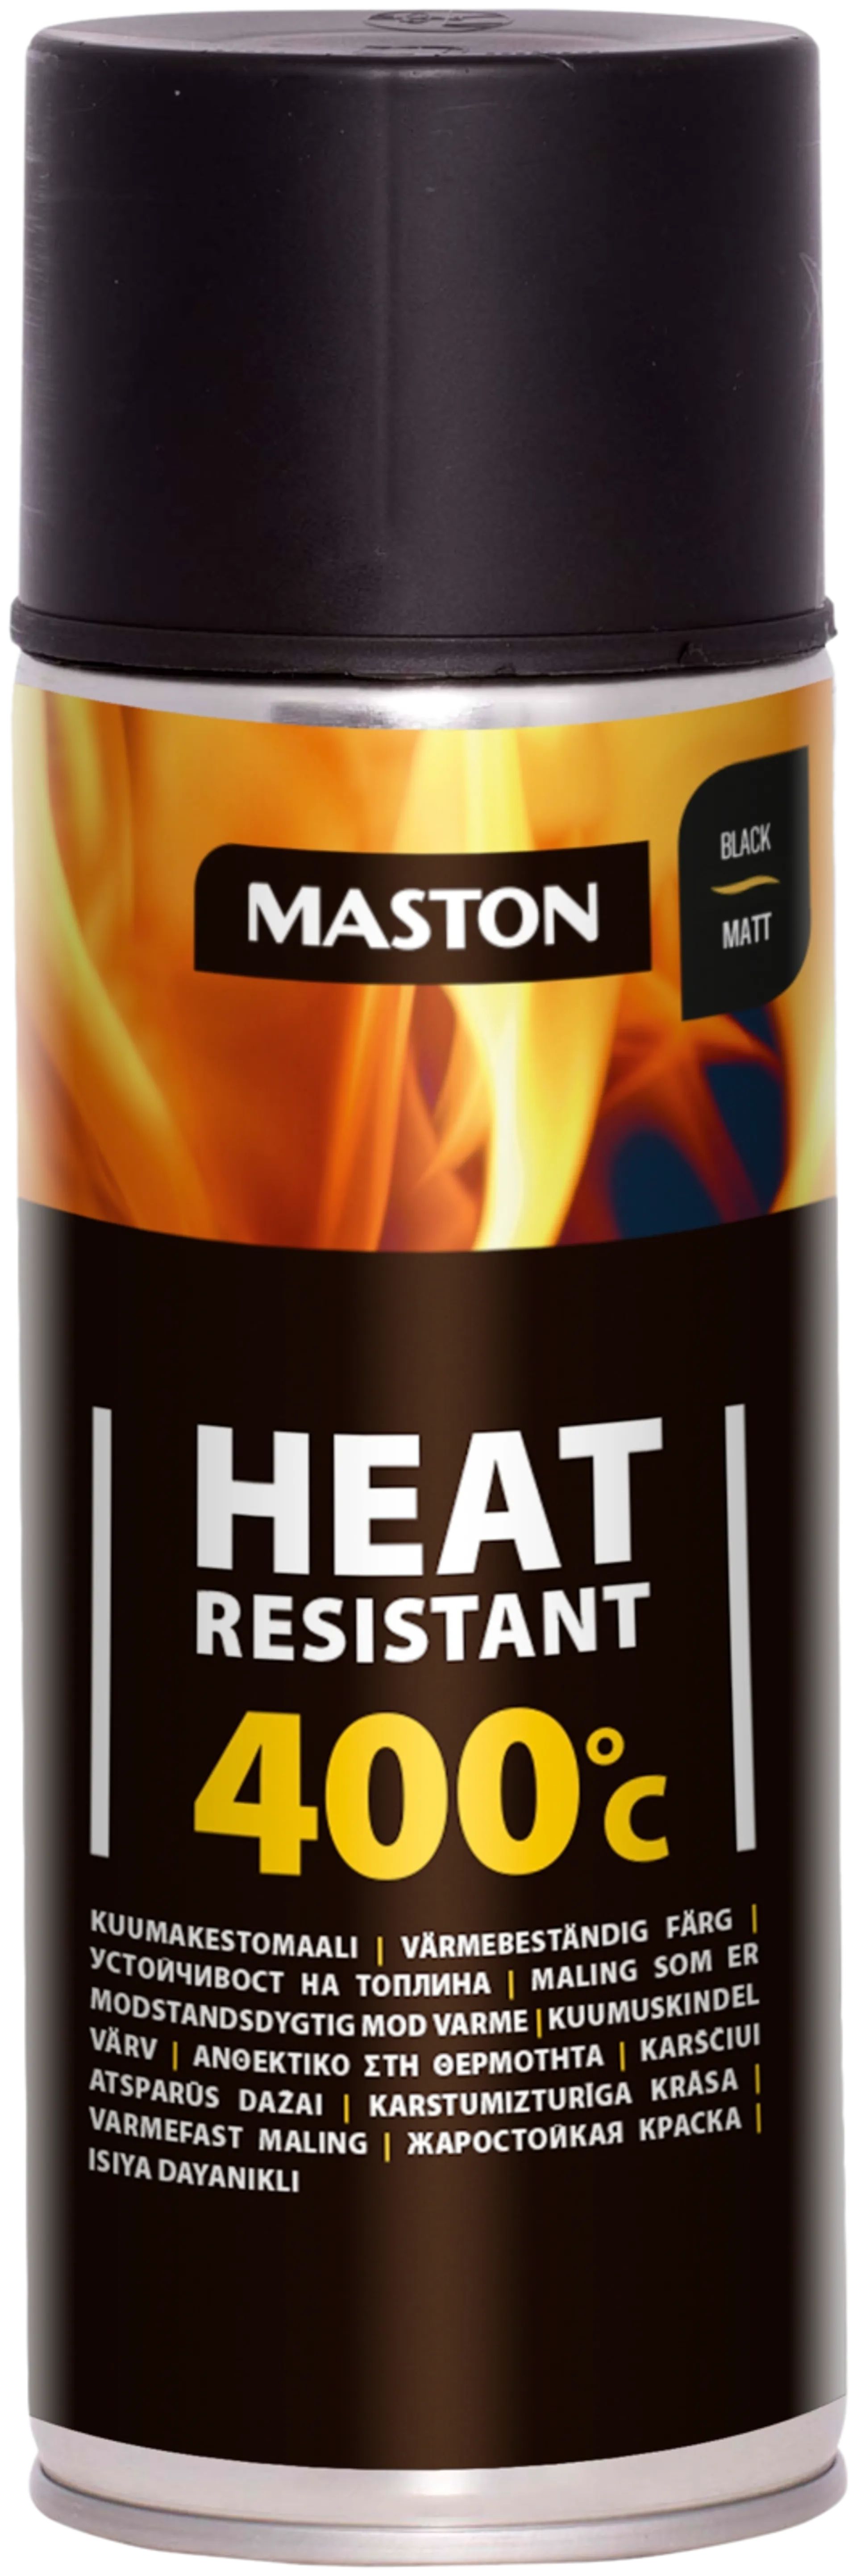 Maston kuumakestomaali 400°C spray musta 400ml